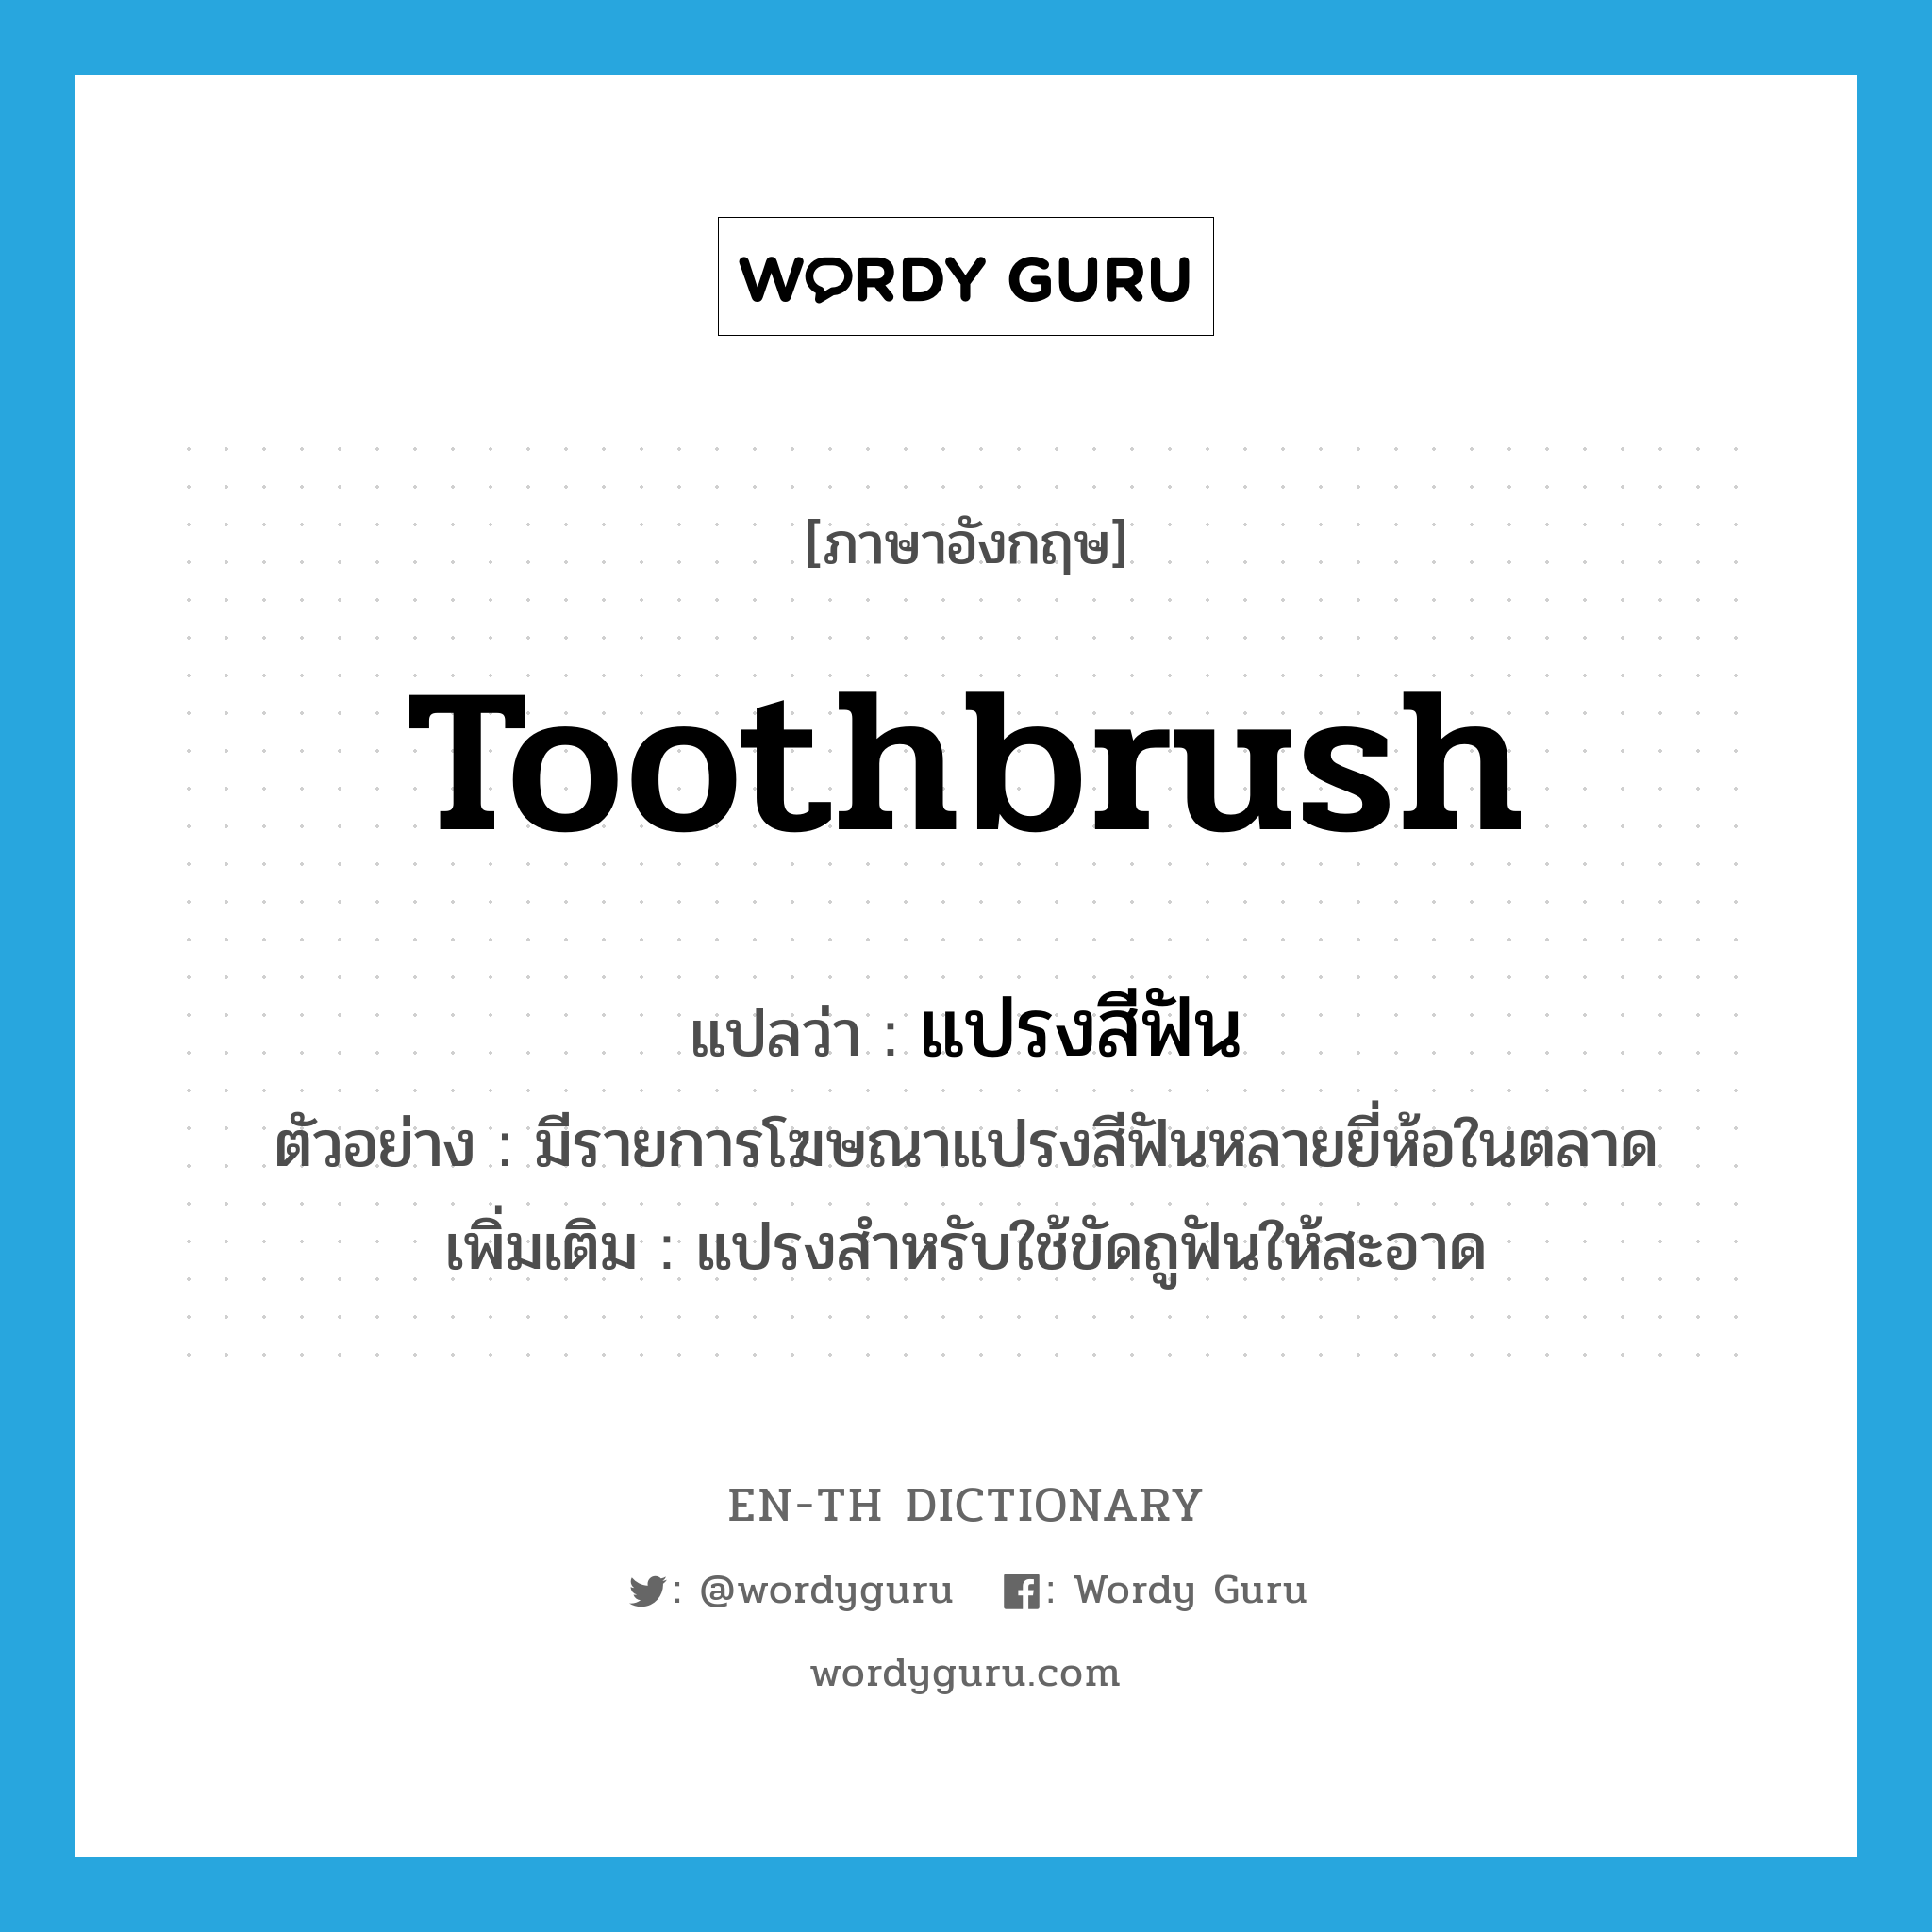 แปรงสีฟัน ภาษาอังกฤษ?, คำศัพท์ภาษาอังกฤษ แปรงสีฟัน แปลว่า toothbrush ประเภท N ตัวอย่าง มีรายการโฆษณาแปรงสีฟันหลายยี่ห้อในตลาด เพิ่มเติม แปรงสำหรับใช้ขัดถูฟันให้สะอาด หมวด N